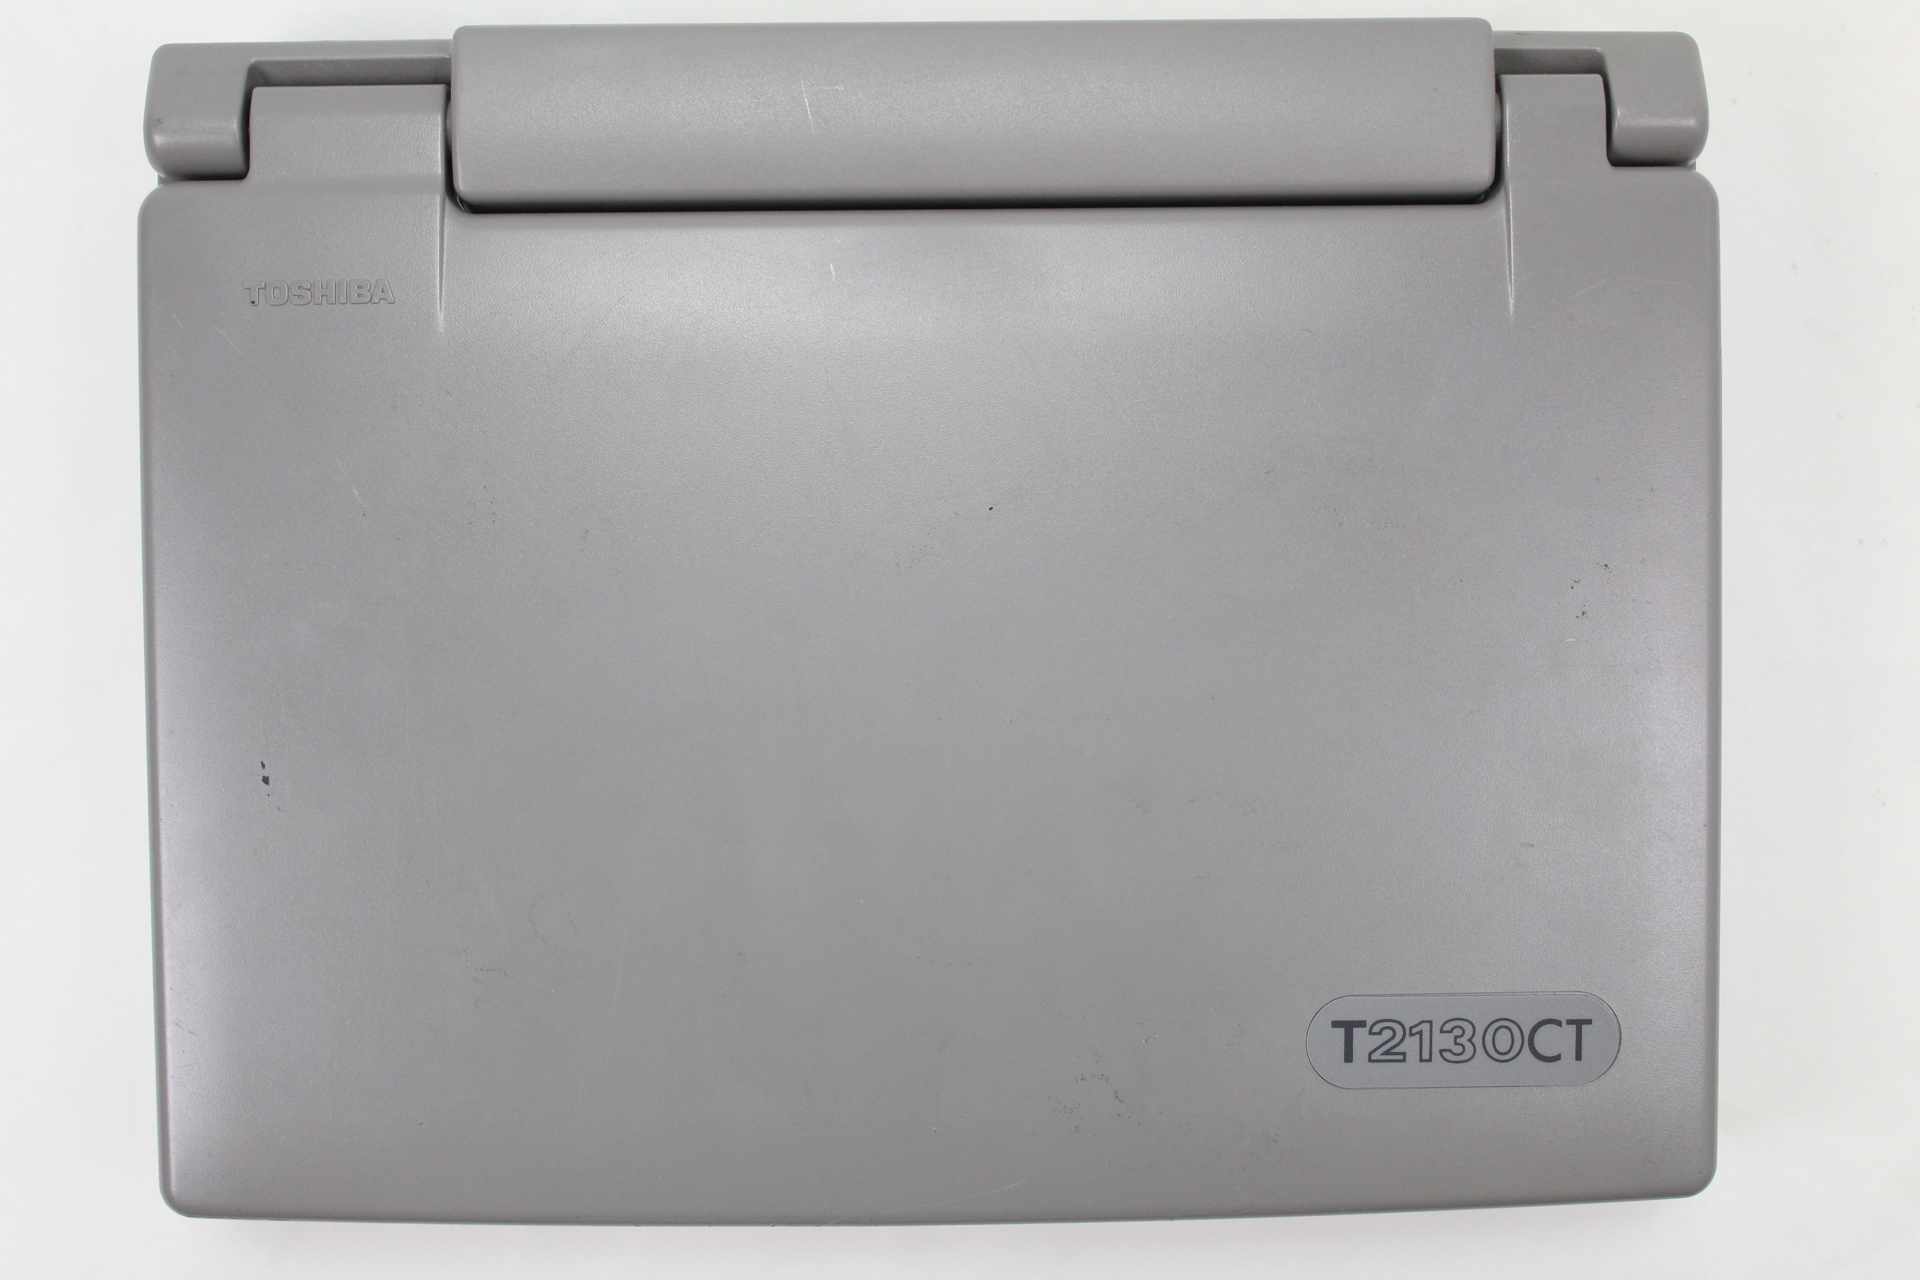 Toshiba T2130CT